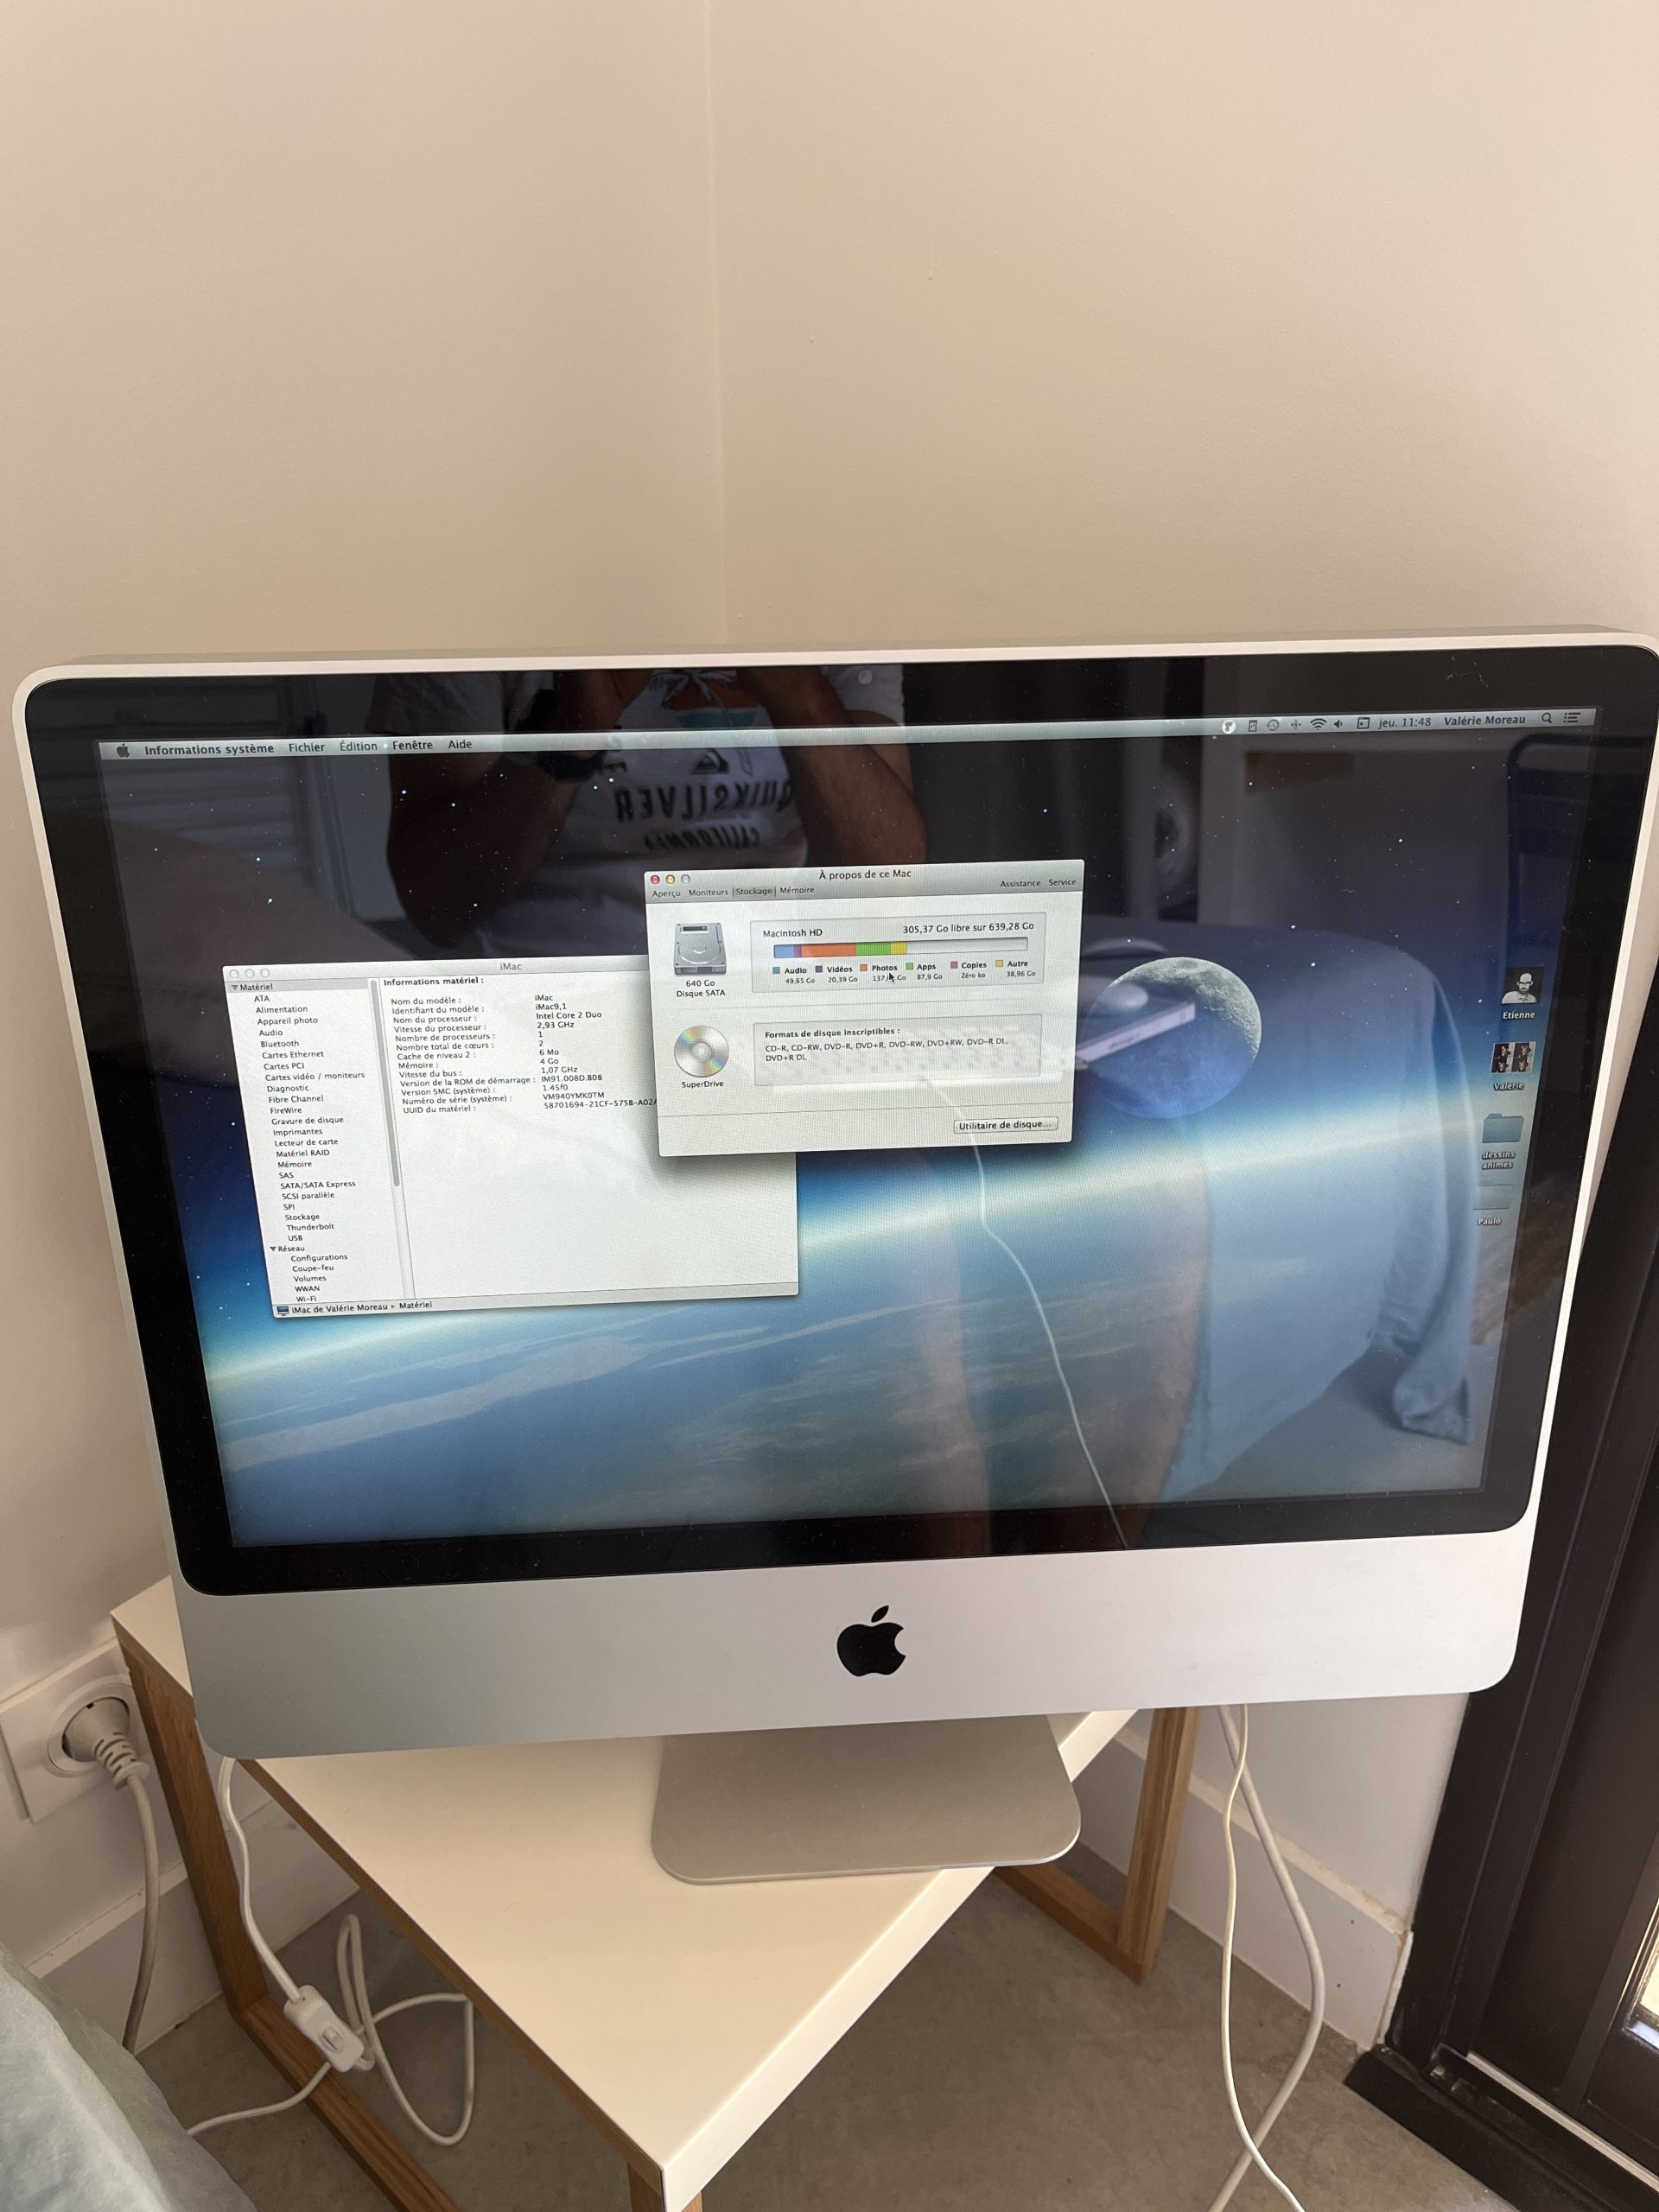 iMac9,1 Intel Core 2 Duo 24 pouces, début 2009